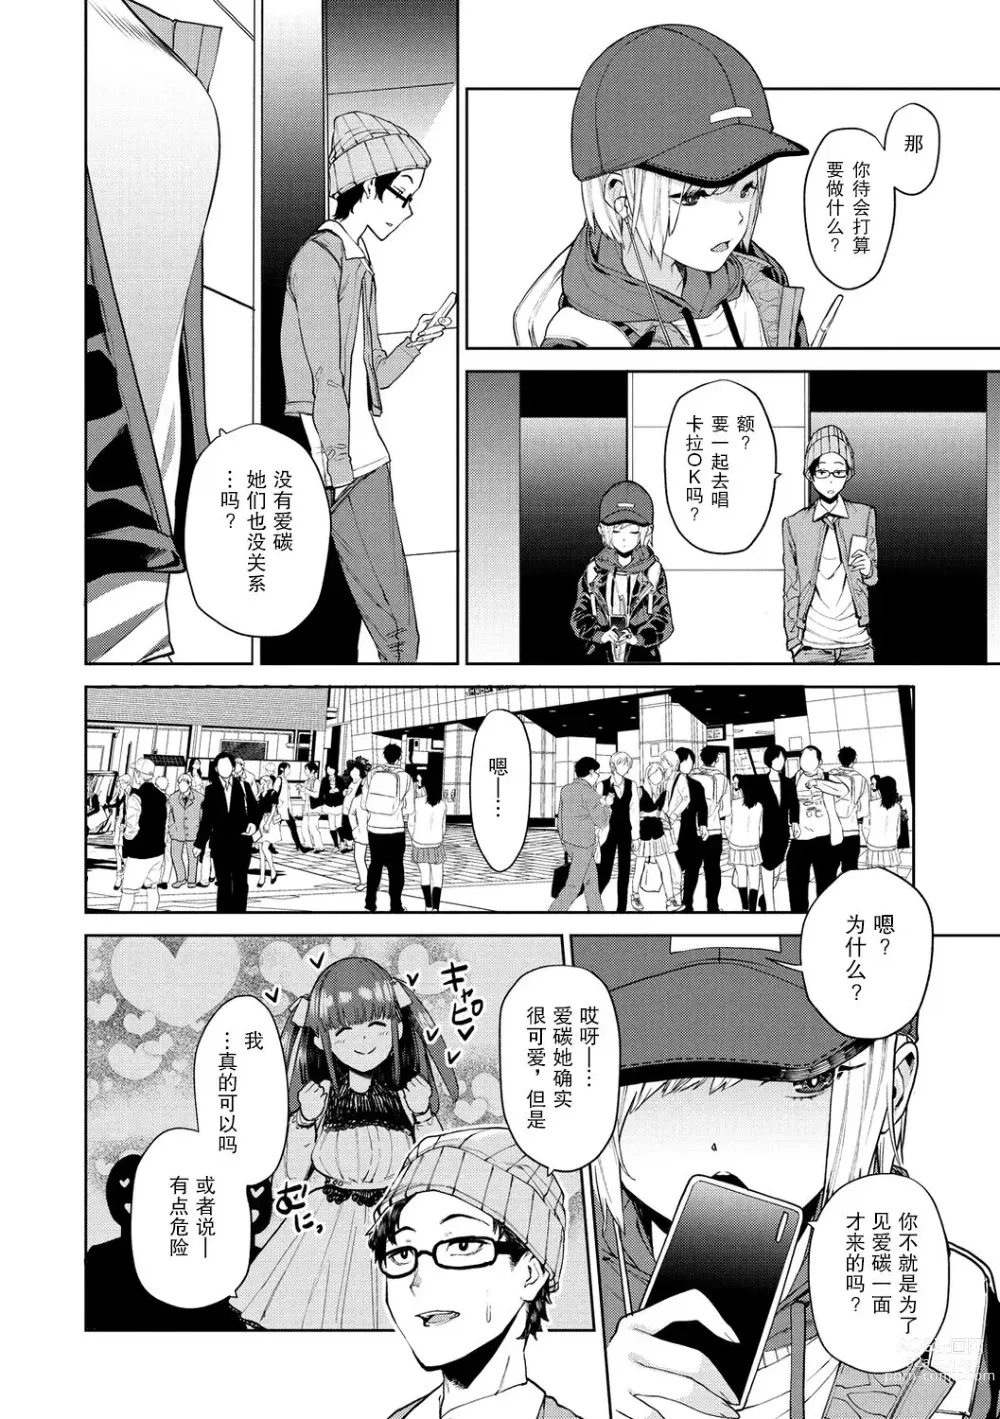 Page 3 of manga 96 - kuro - Black